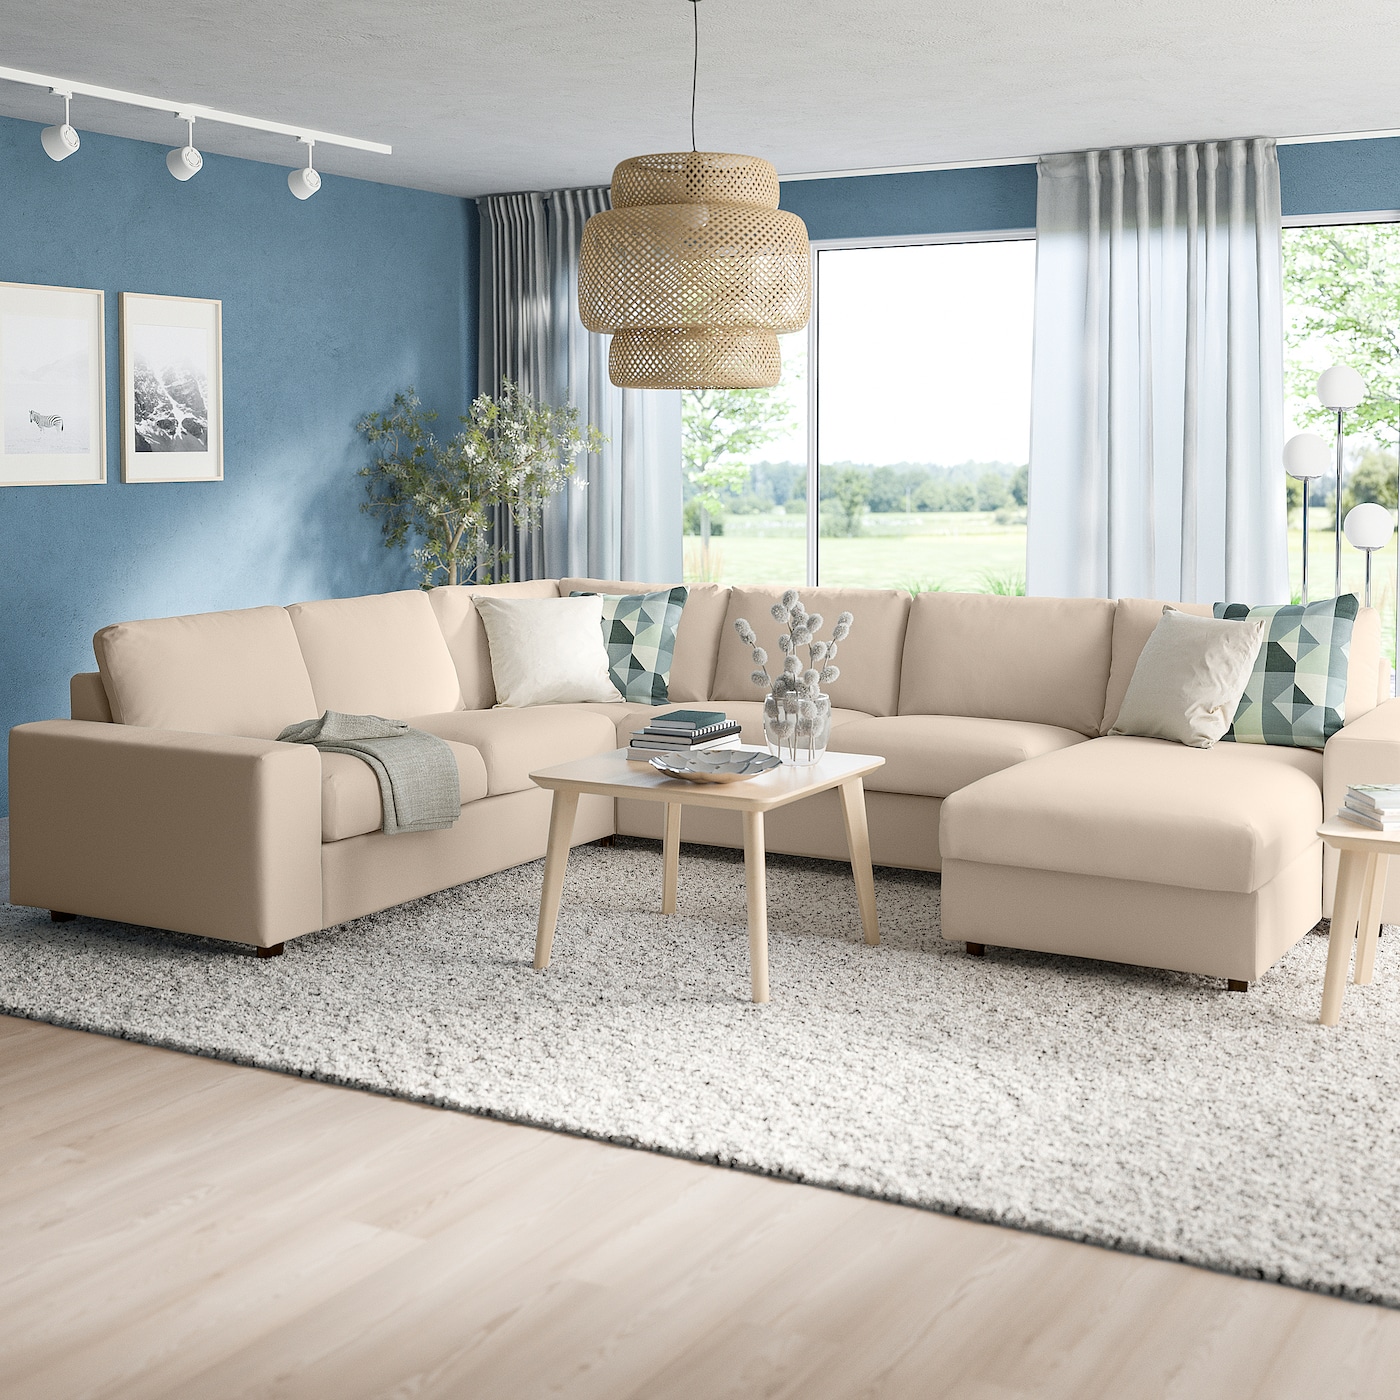 ВИМЛЕ Диван угловой, 5-местный. диван+диван, с широкими подлокотниками/Халларп бежевый VIMLE IKEA цена и фото